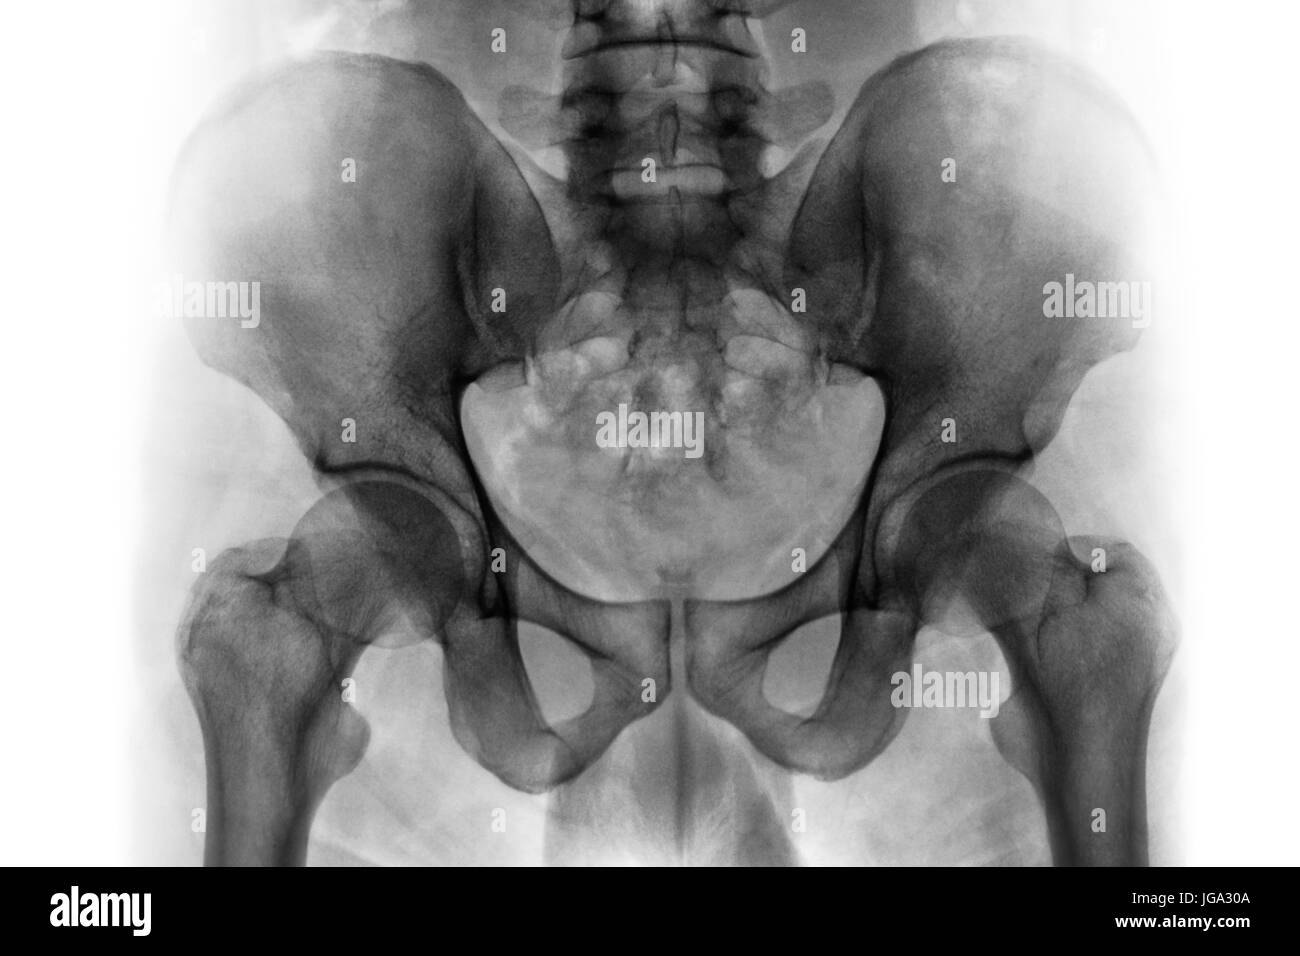 Película de rayos x de la pelvis humana normal y articulaciones de la cadera . Foto de stock